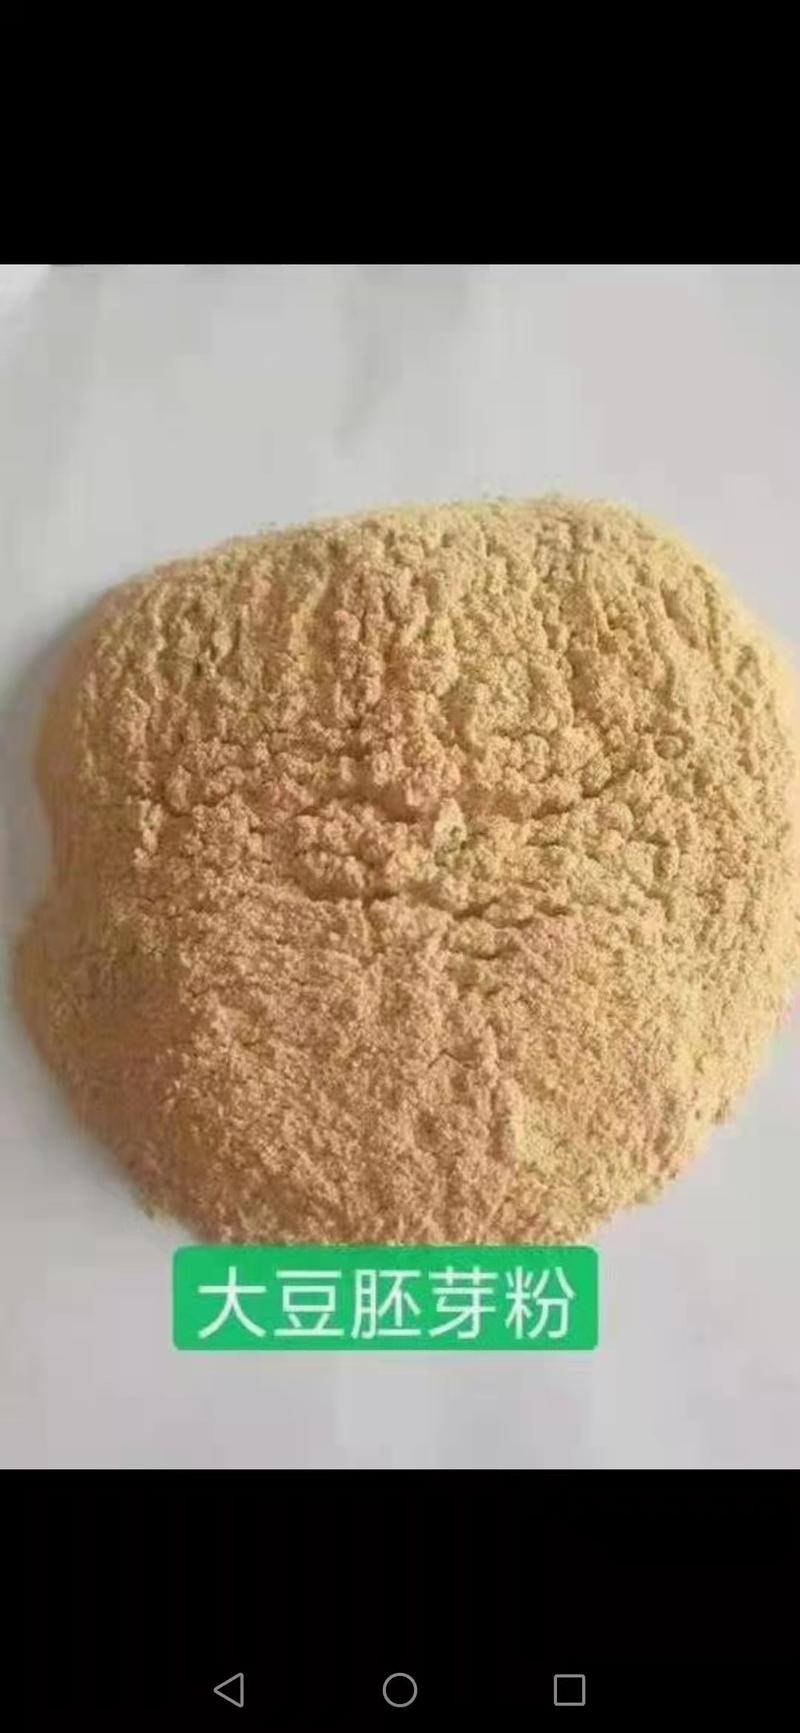 大豆胚芽粉蛋白45灰分6可代替部分豆粕用诚信合作质量好